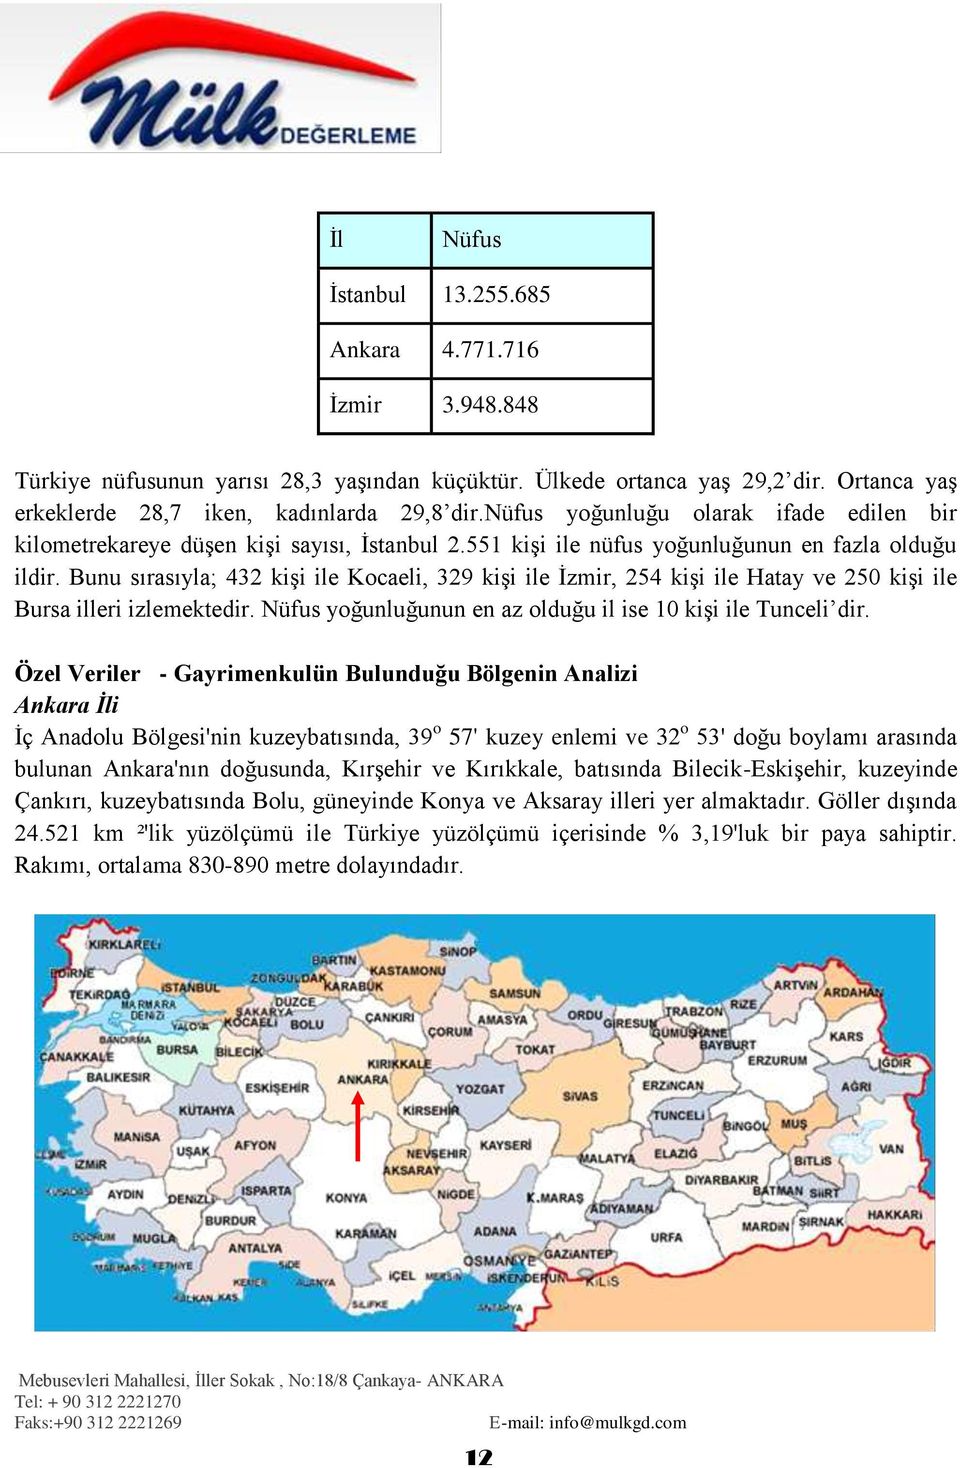 Bunu sırasıyla; 432 kiģi ile Kocaeli, 329 kiģi ile Ġzmir, 254 kiģi ile Hatay ve 250 kiģi ile Bursa illeri izlemektedir. Nüfus yoğunluğunun en az olduğu il ise 10 kiģi ile Tunceli dir.